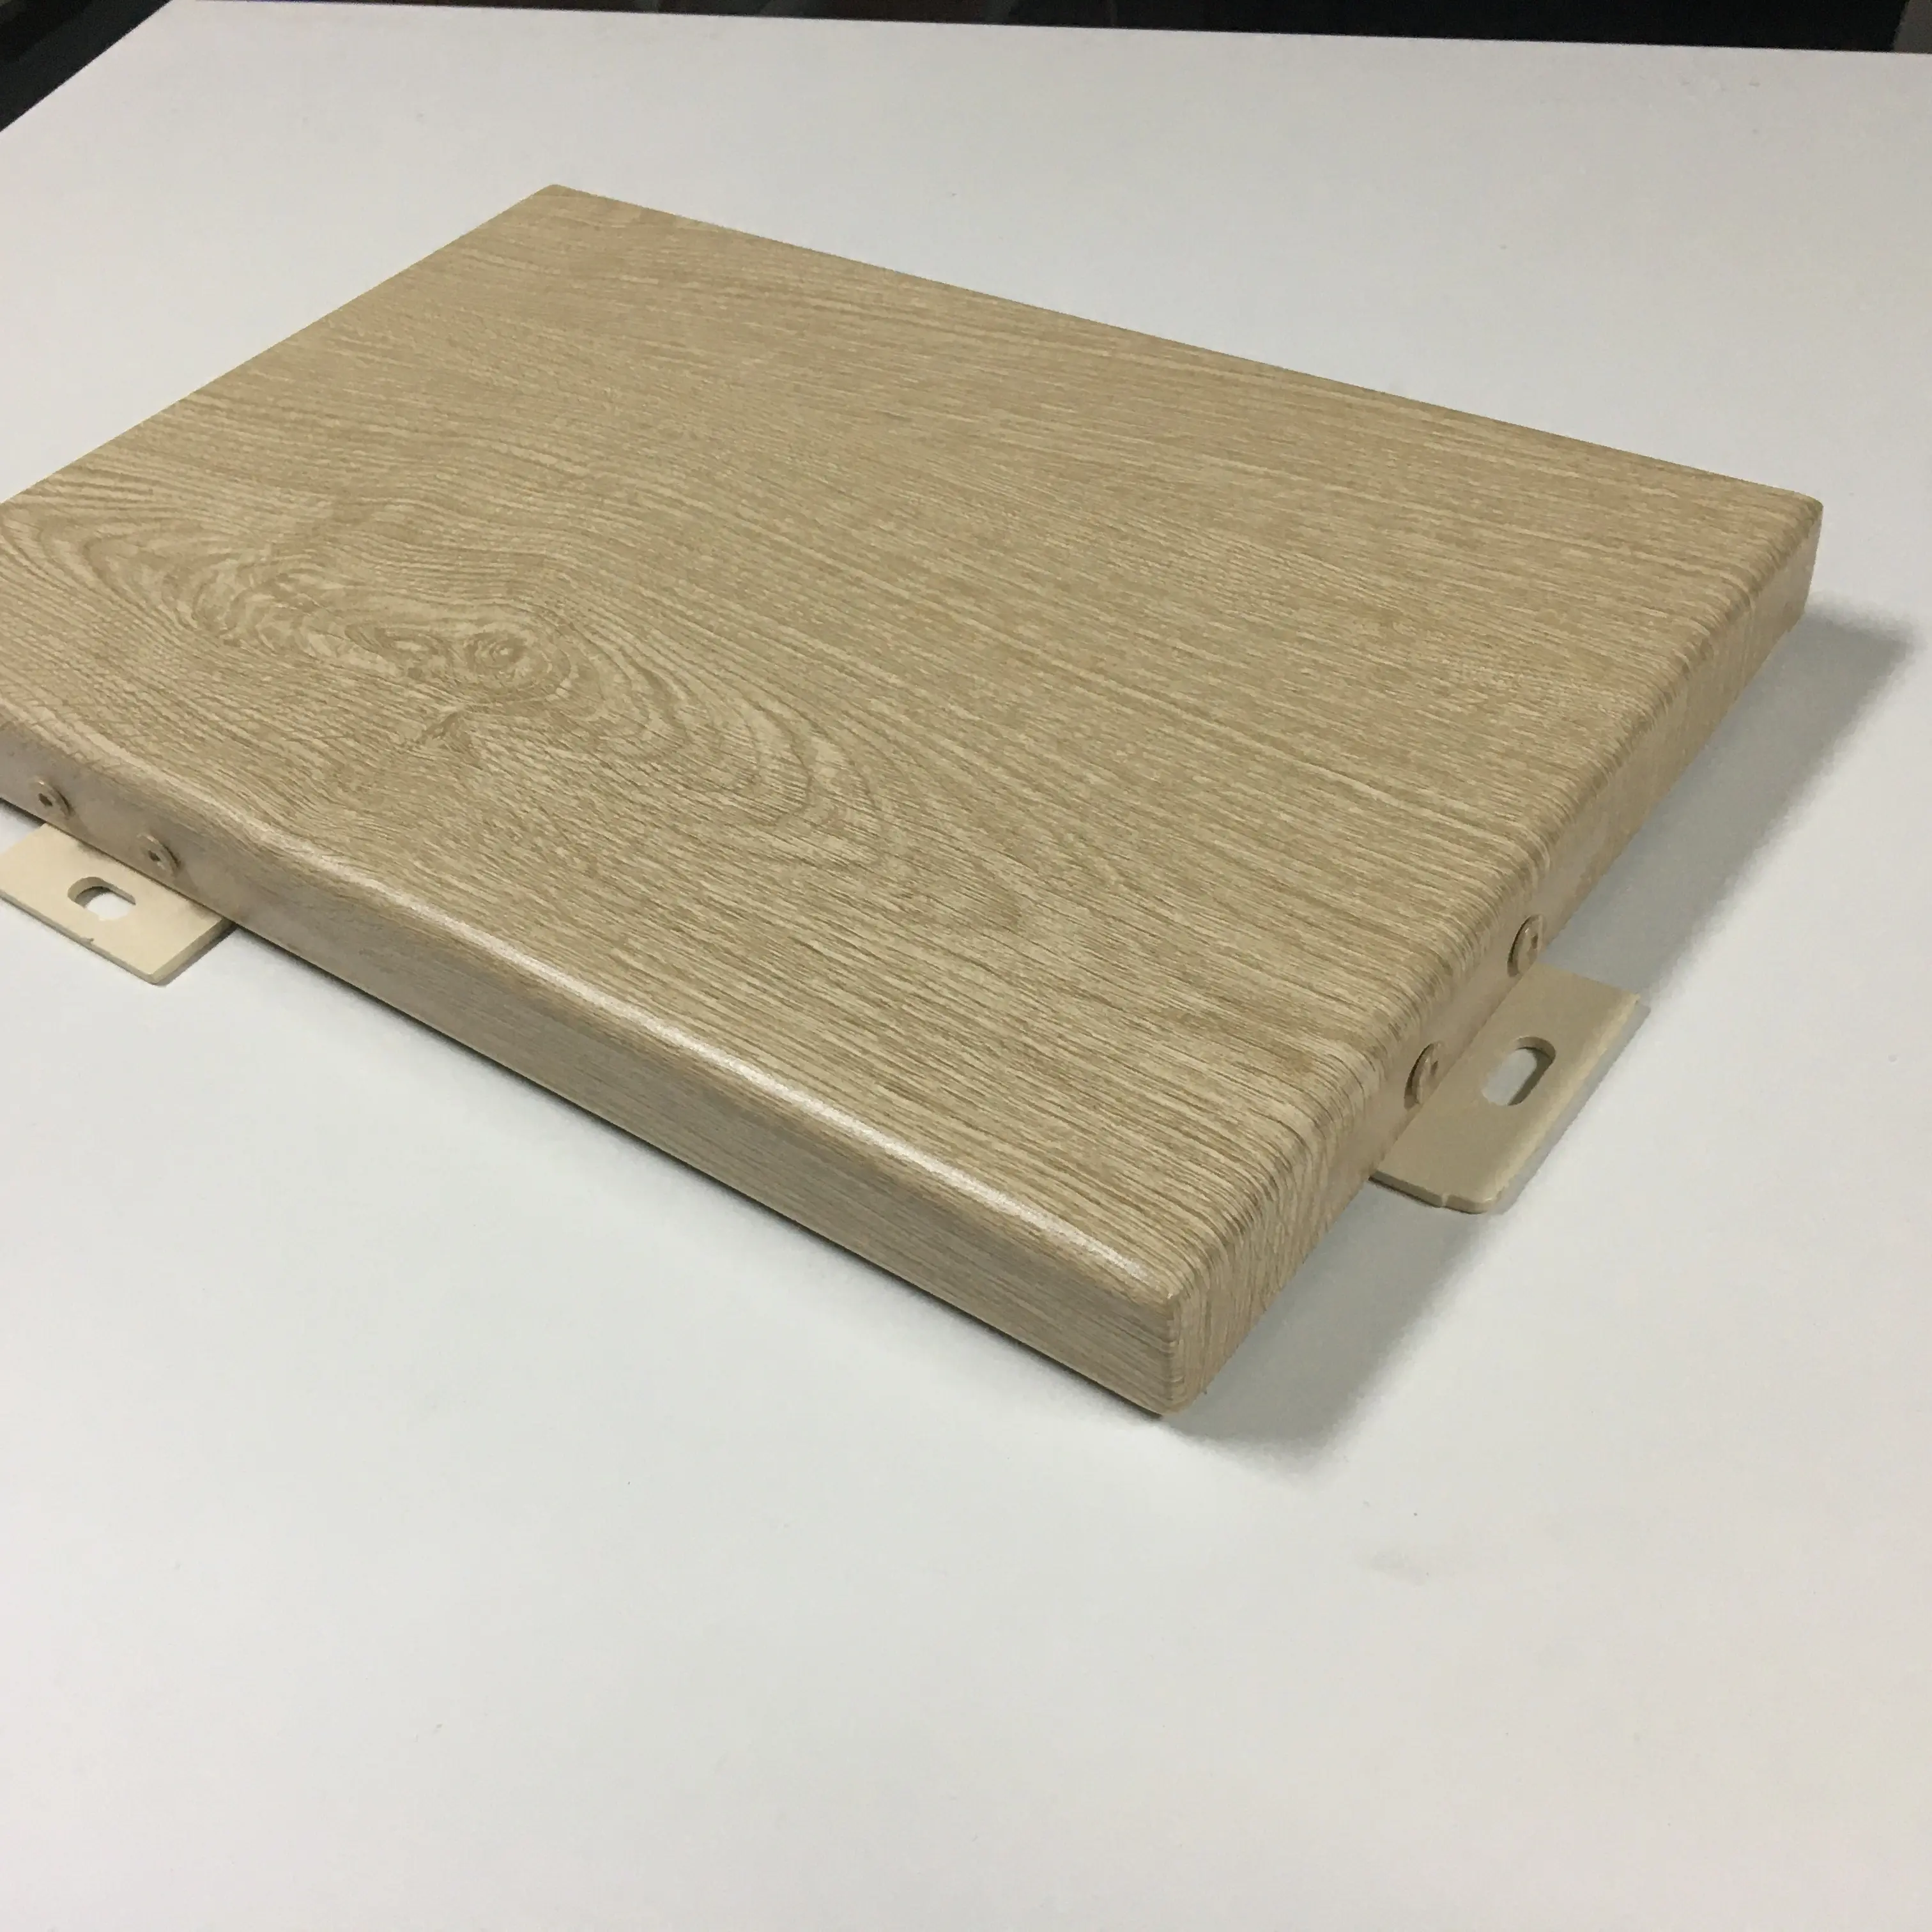 Permukaan kayu datar logam aluminium padat panel casing eksterior kayu